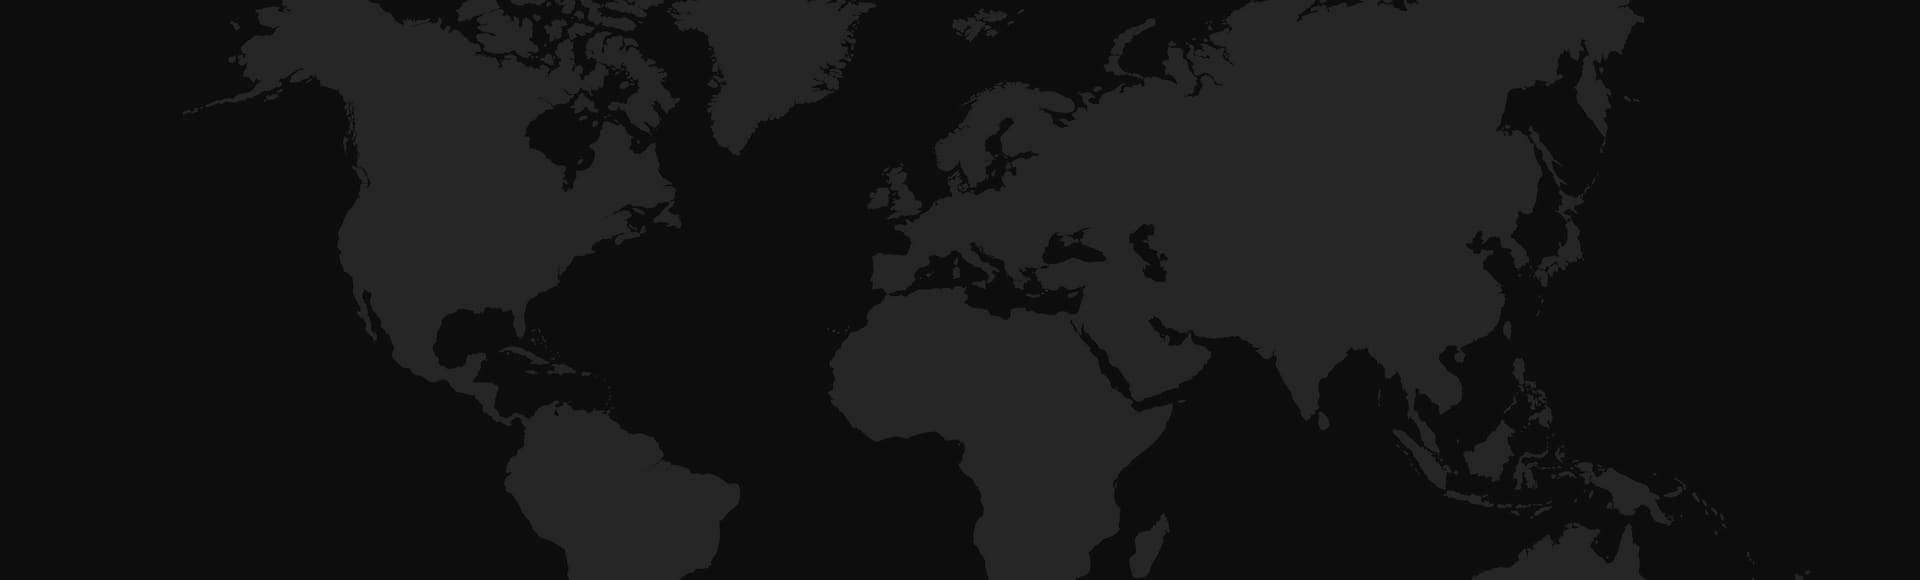 Image world map